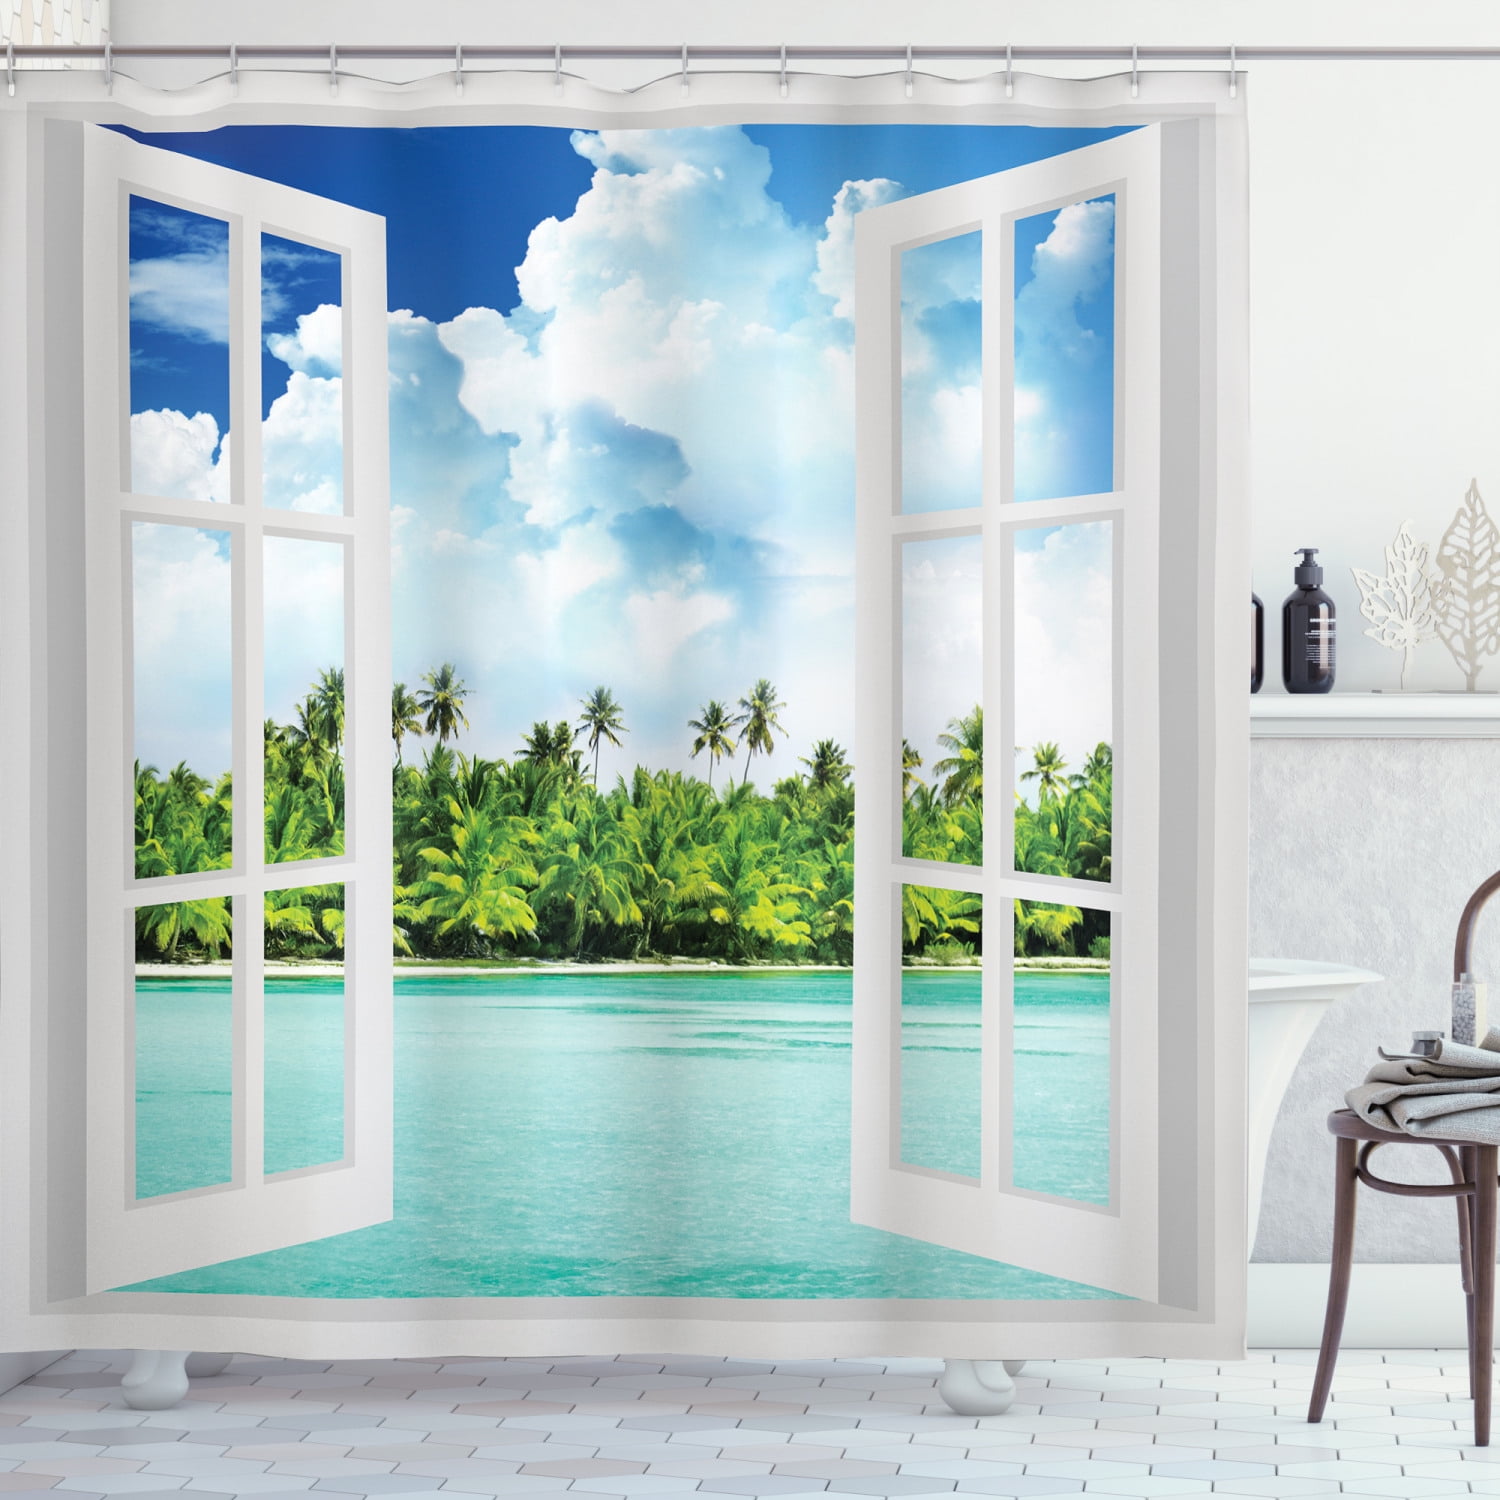 Tropical Oasis Shower Curtain Open Window Door to Dock Vacation Ocean Beach Hut 